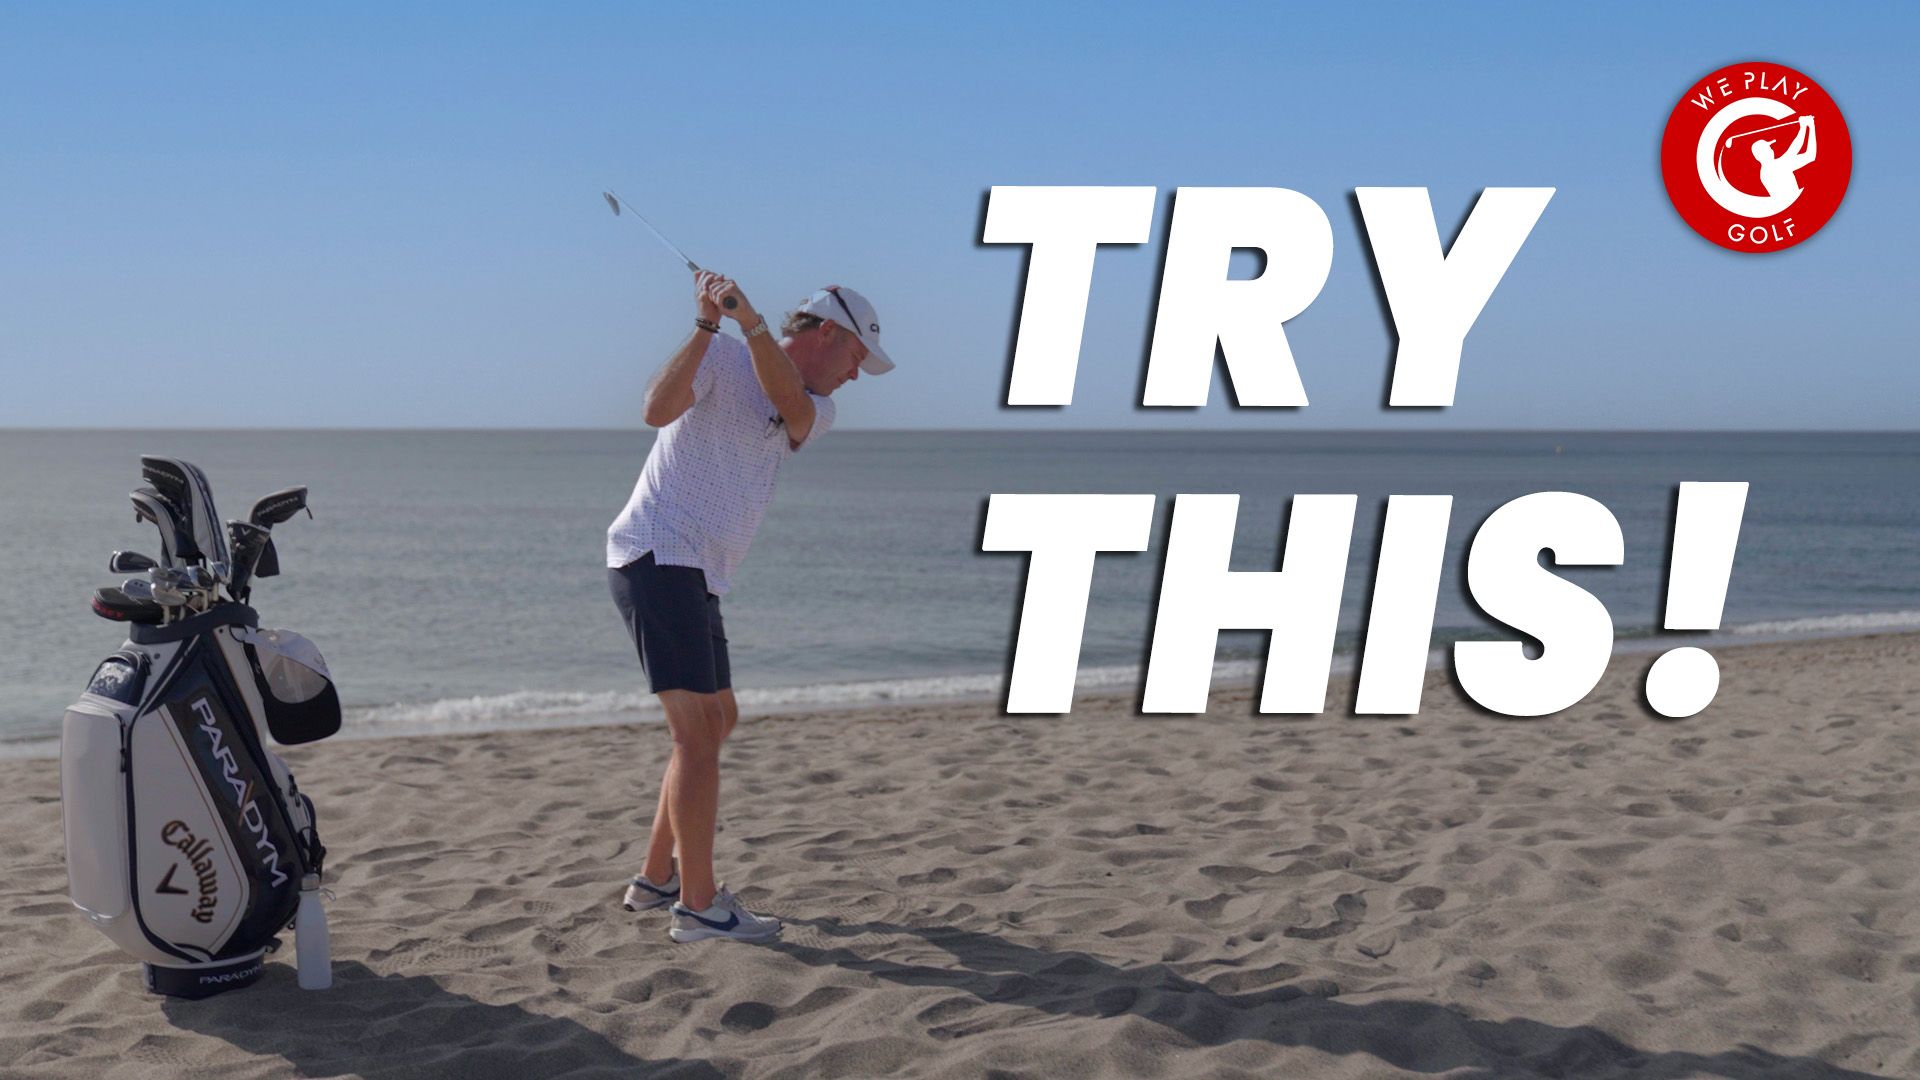 Conseil vidéo : Une chose que chaque golfeur doit essayer - Blog